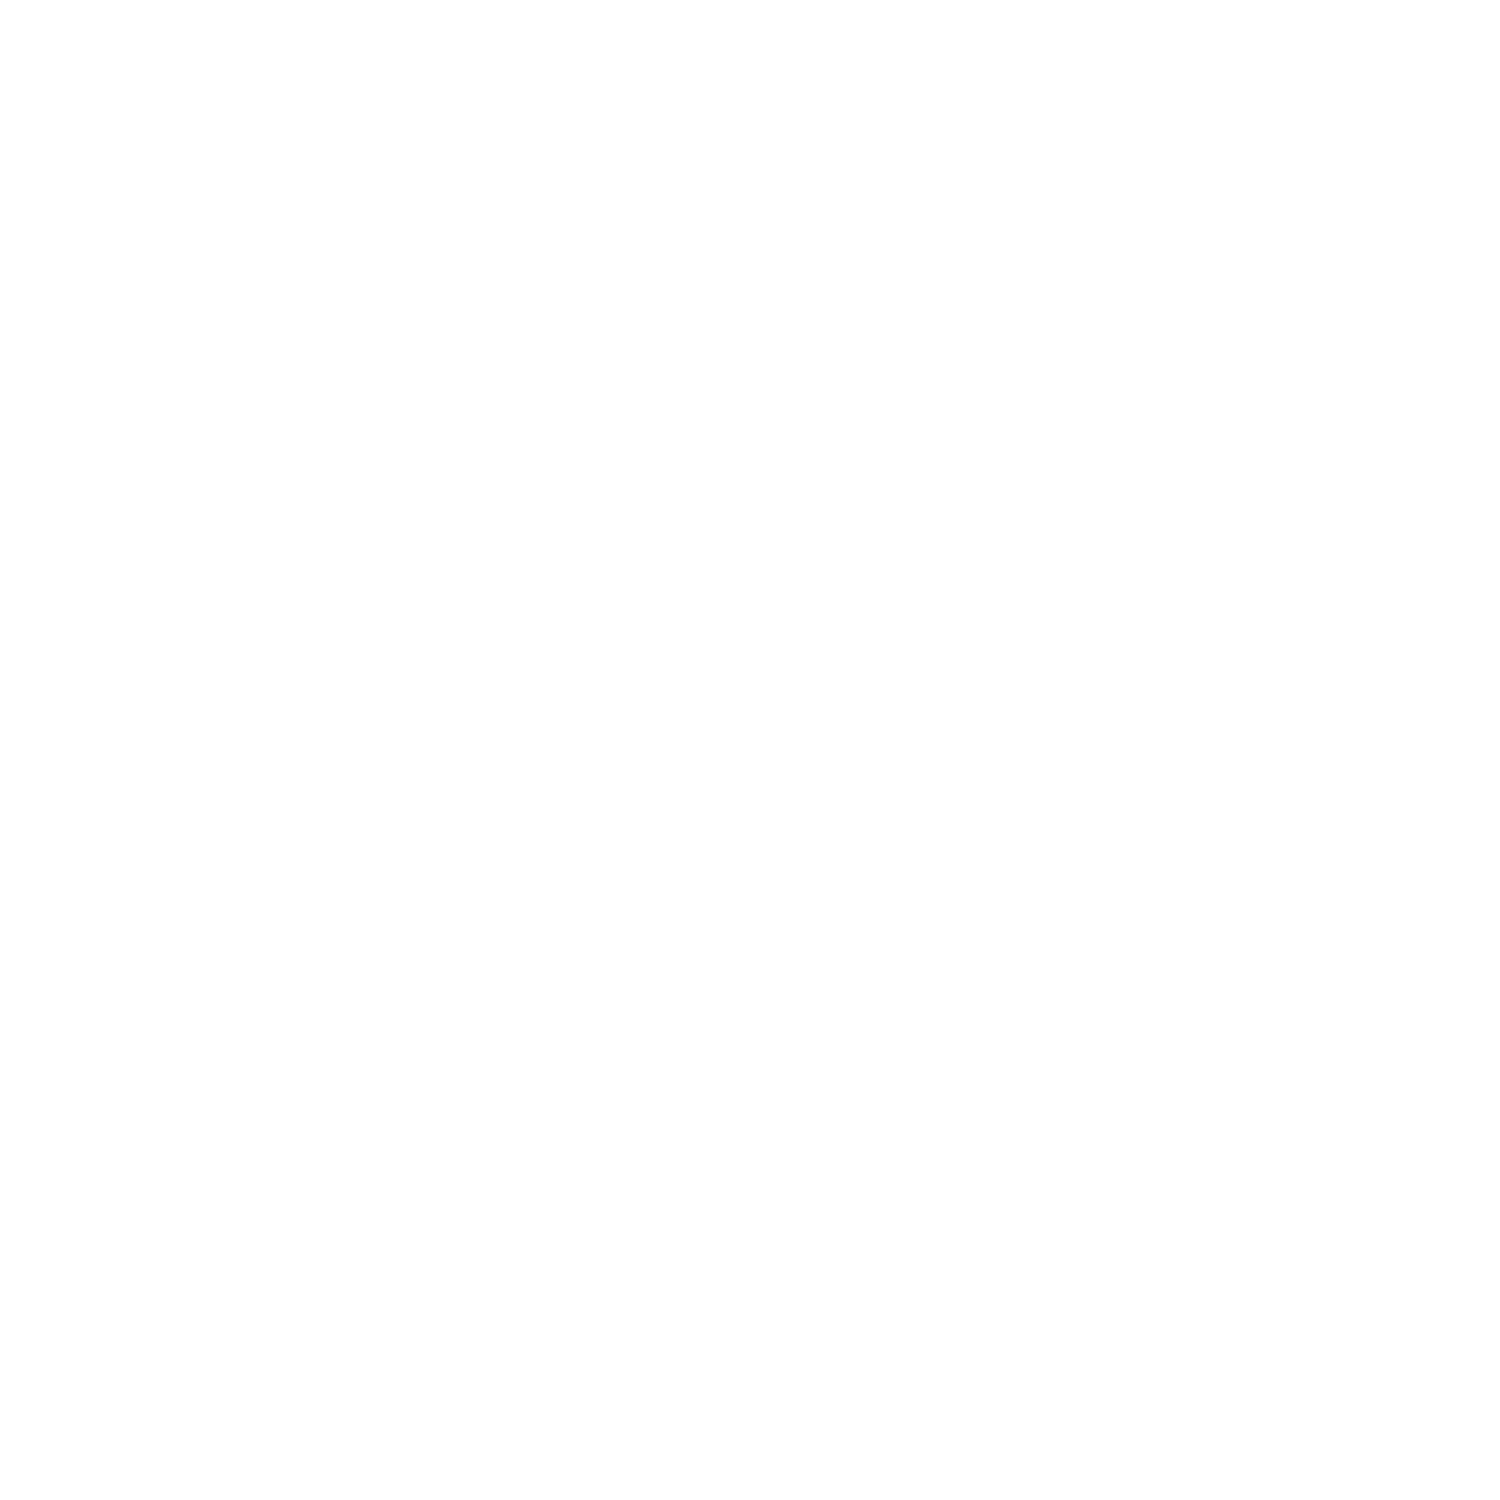 Zero Hunger